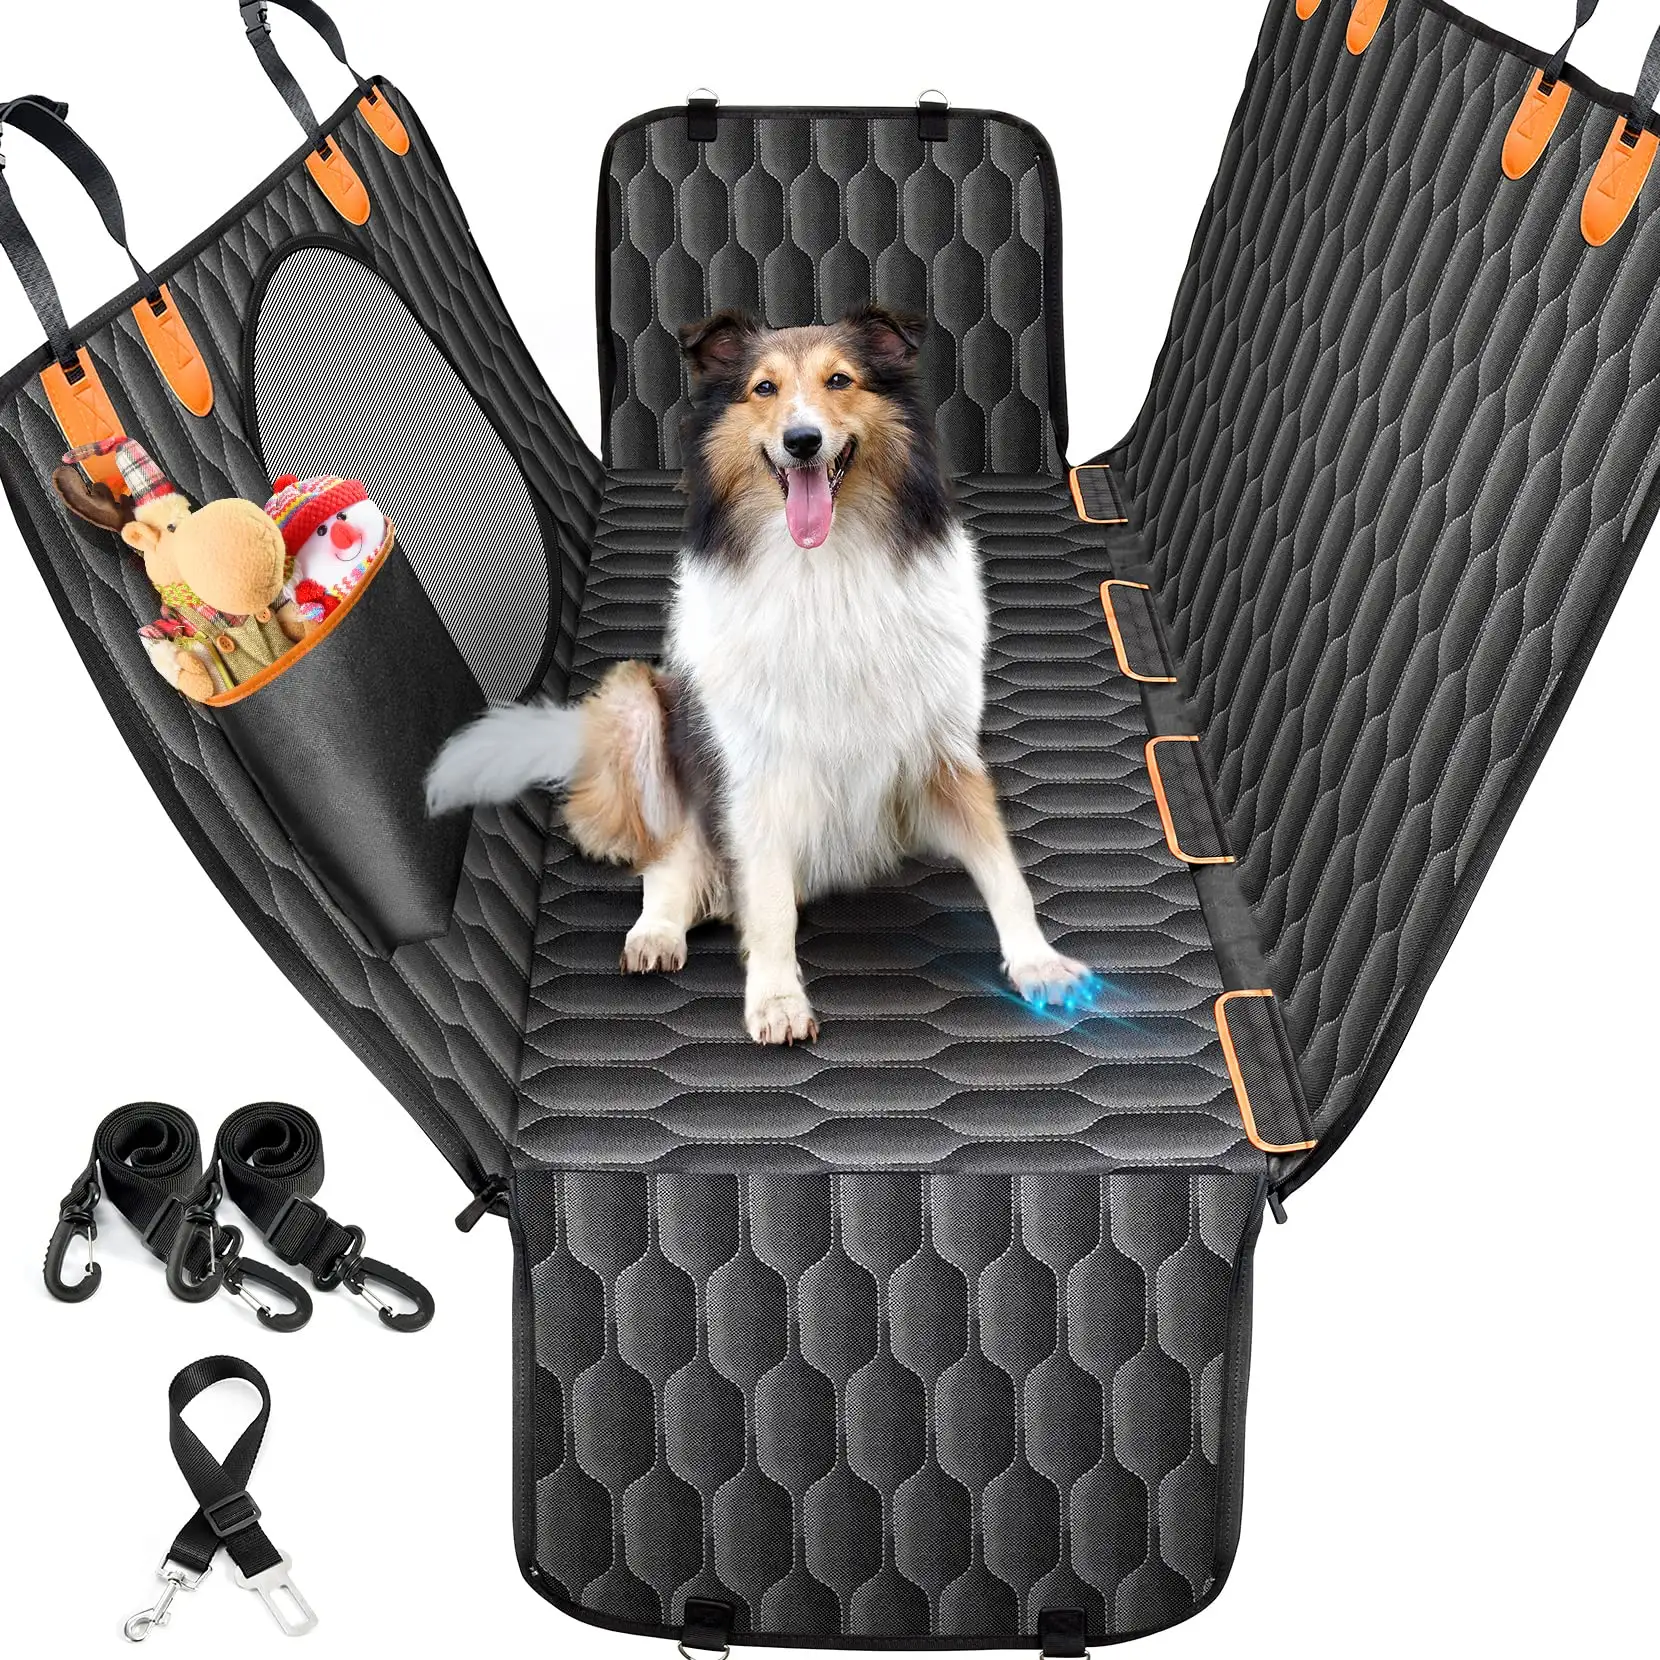 Personalizado durável impermeável Oxford Dog banco traseiro Hammock Pet Dog Car Seat Cover